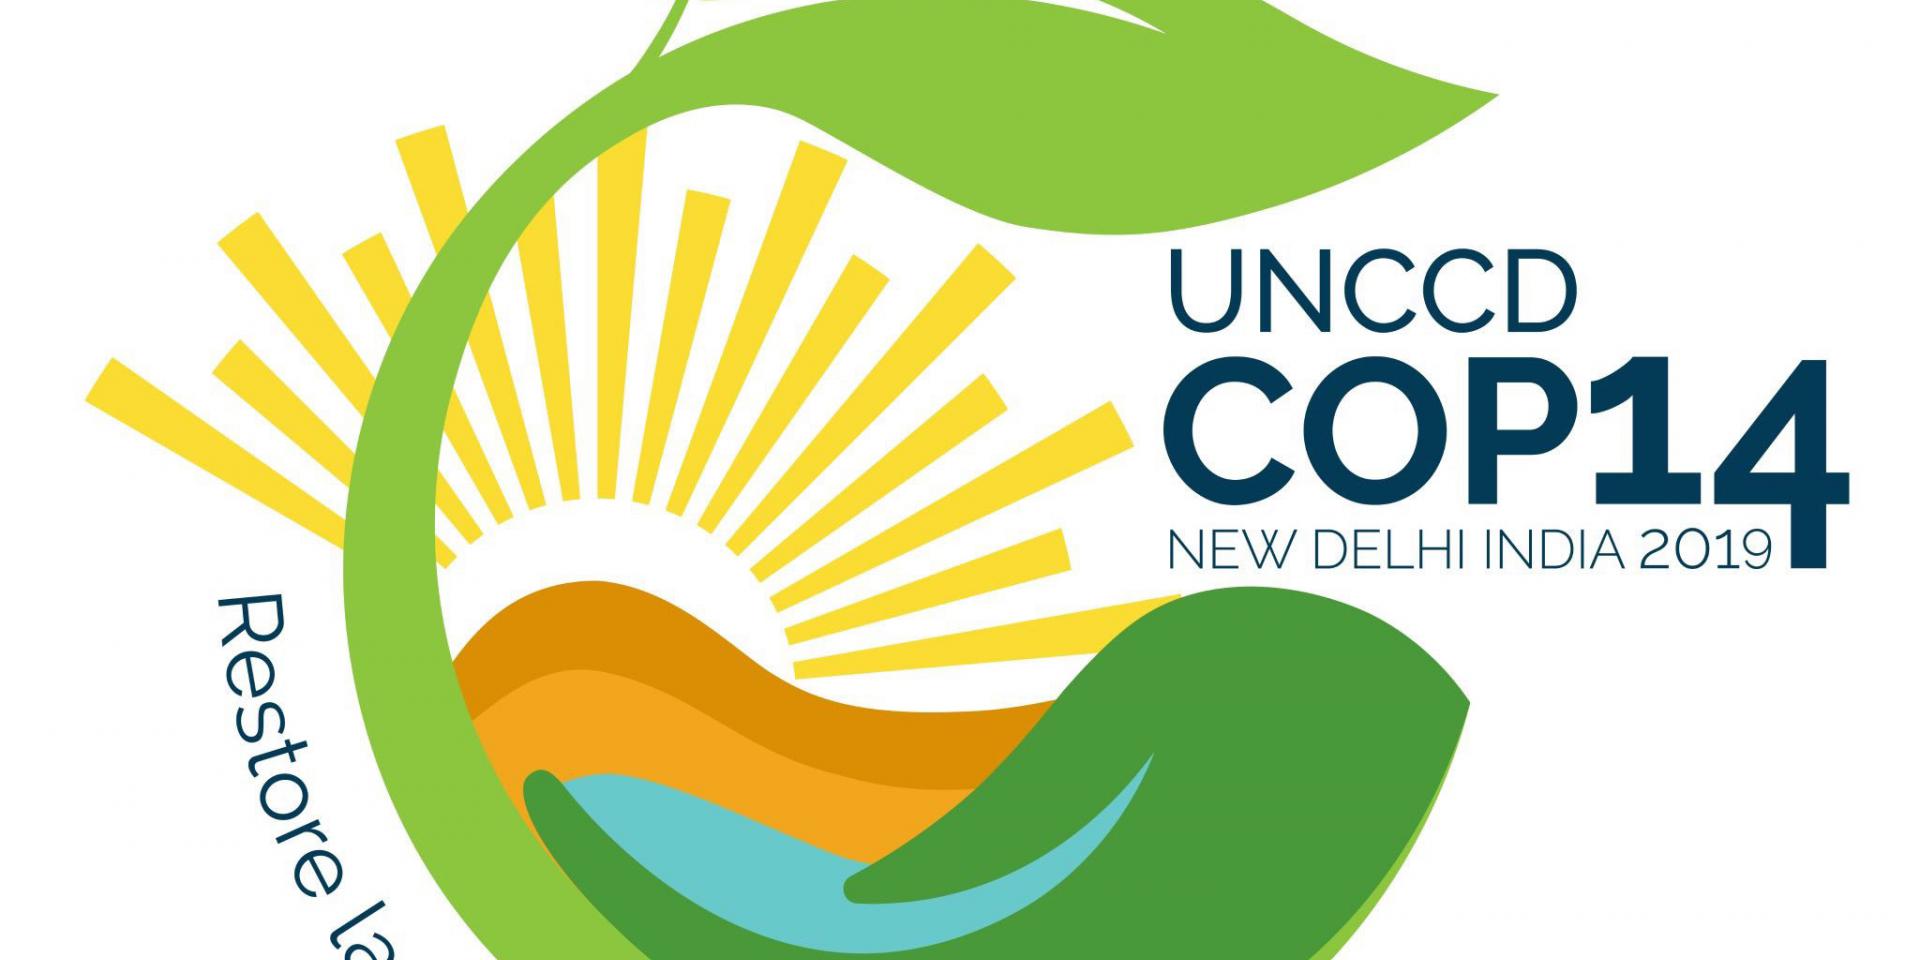 UNCCD COP14 New Delhi, India 2019